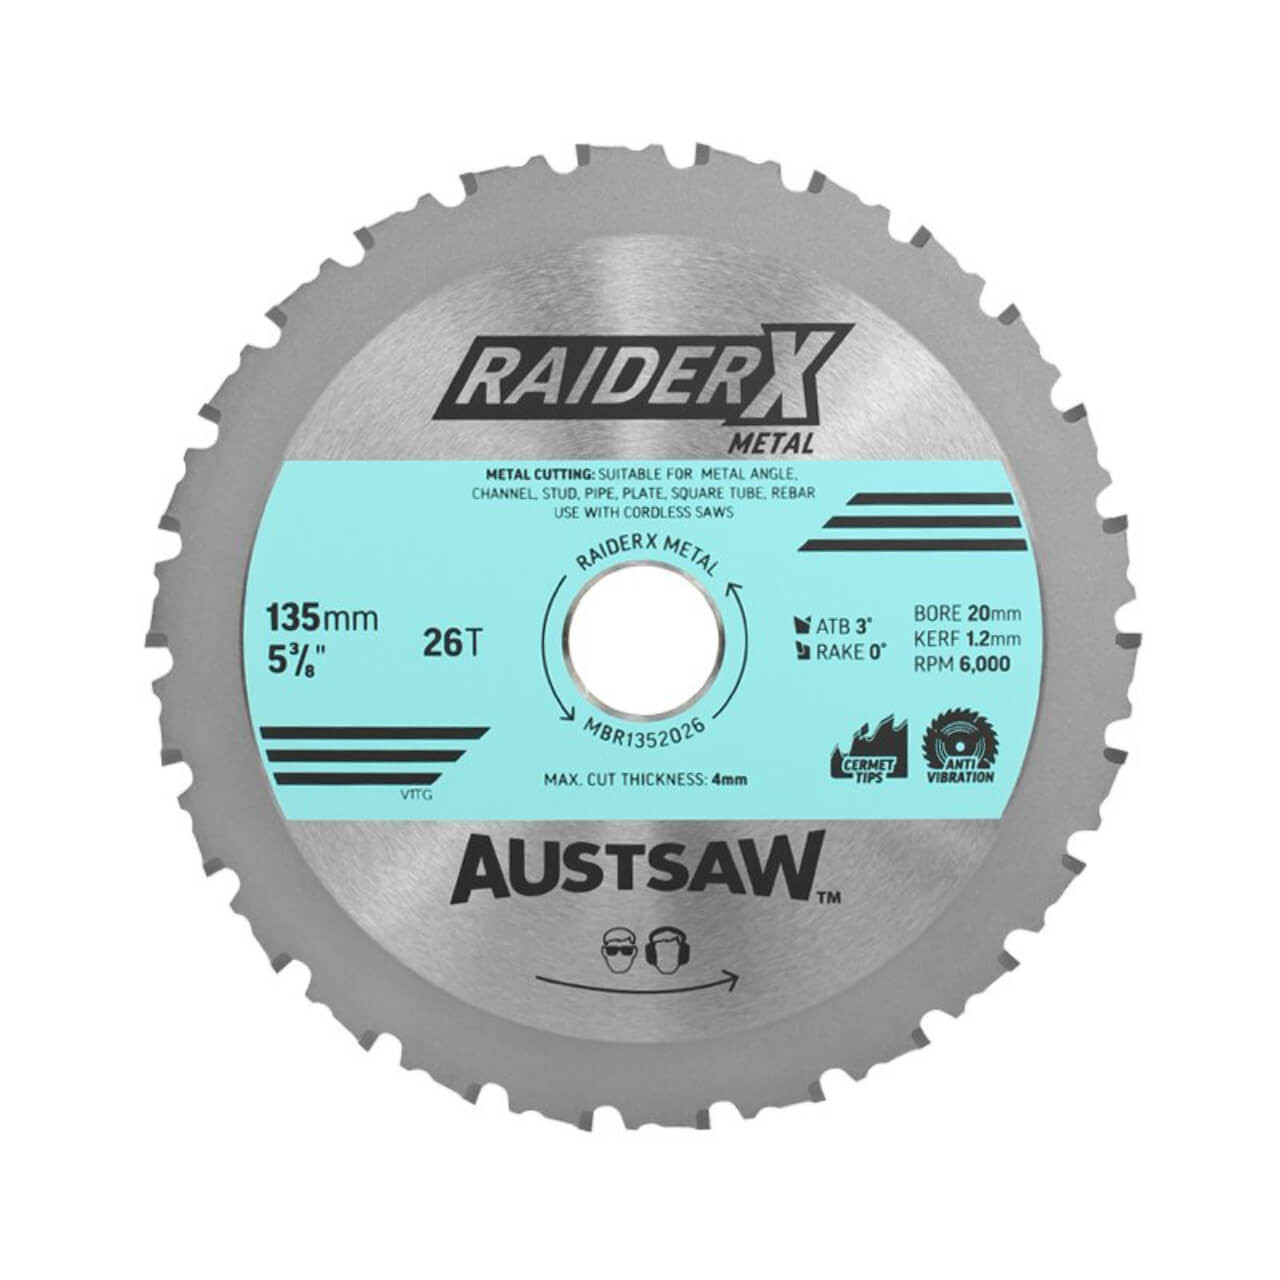 Austsaw RaiderX Metal Blade 135mm x 20 x 26T